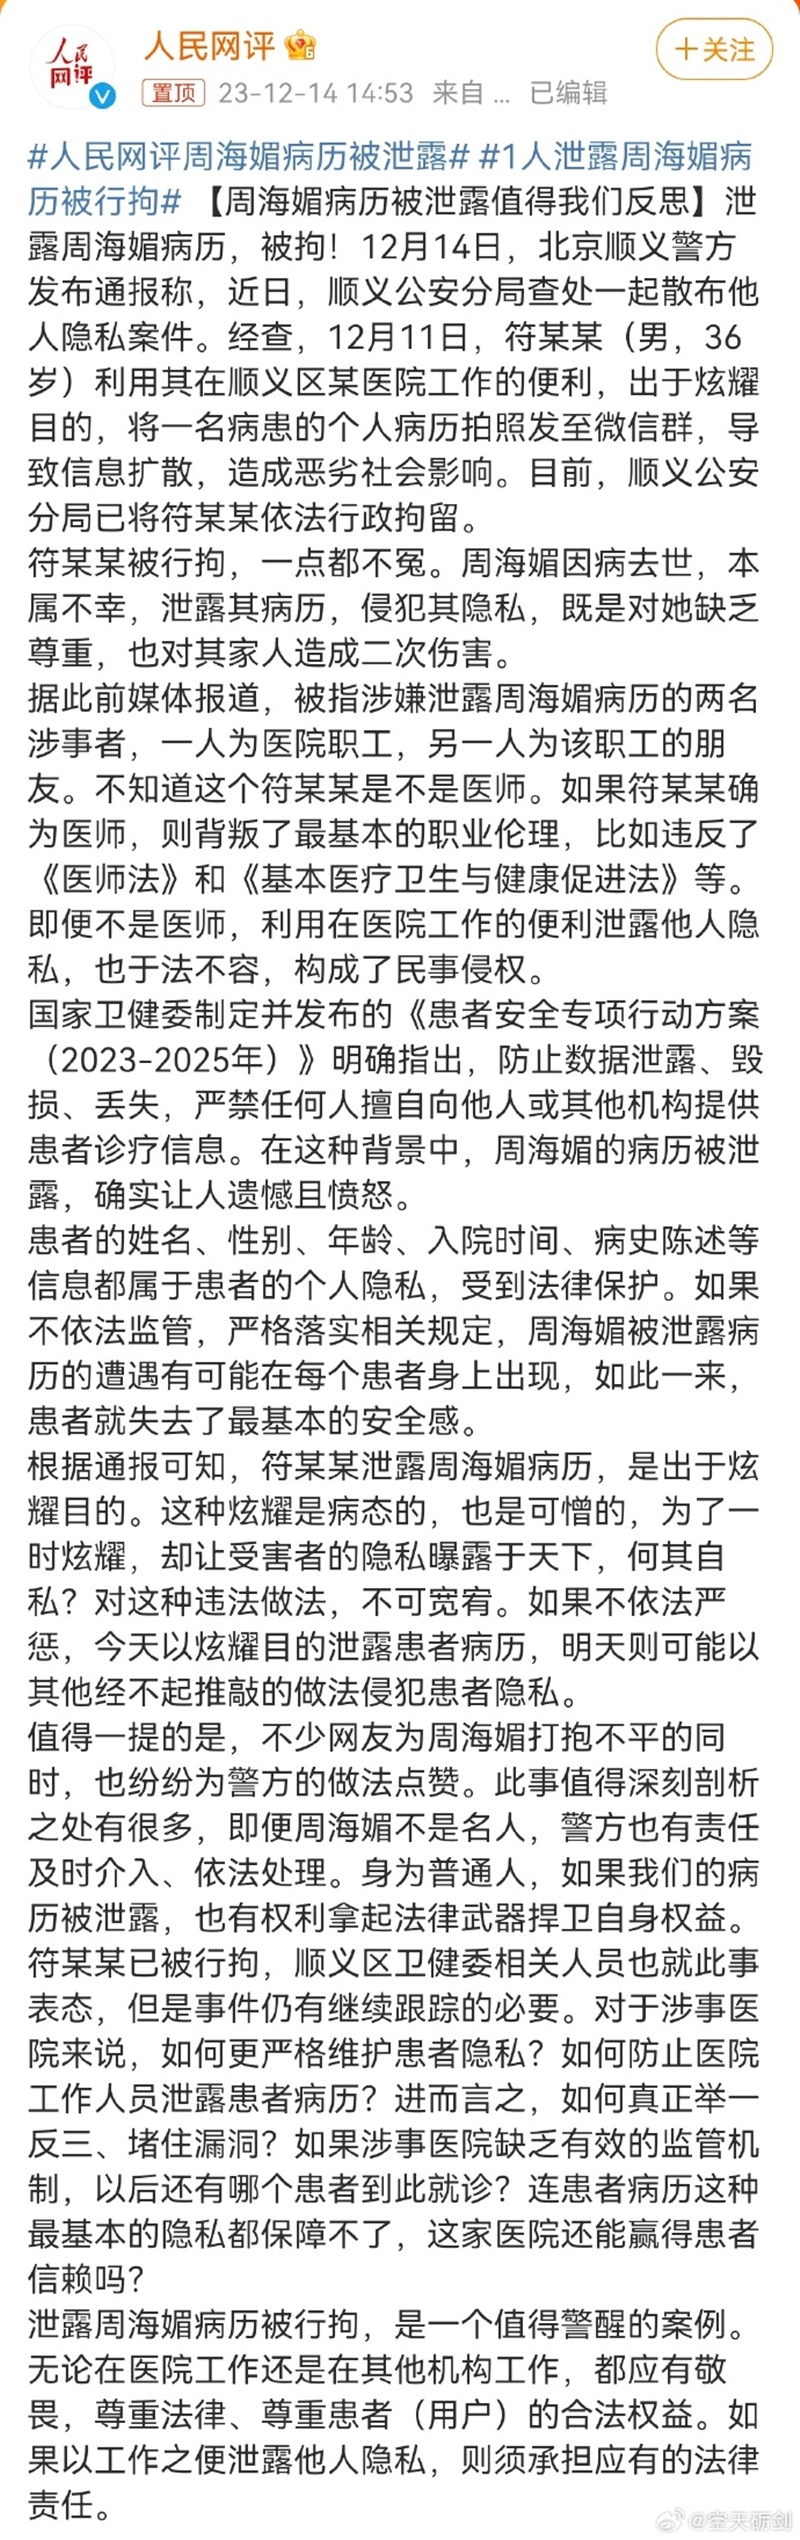 中國官媒《人民網評》長文痛批有關周海媚病歷遭洩漏一事。